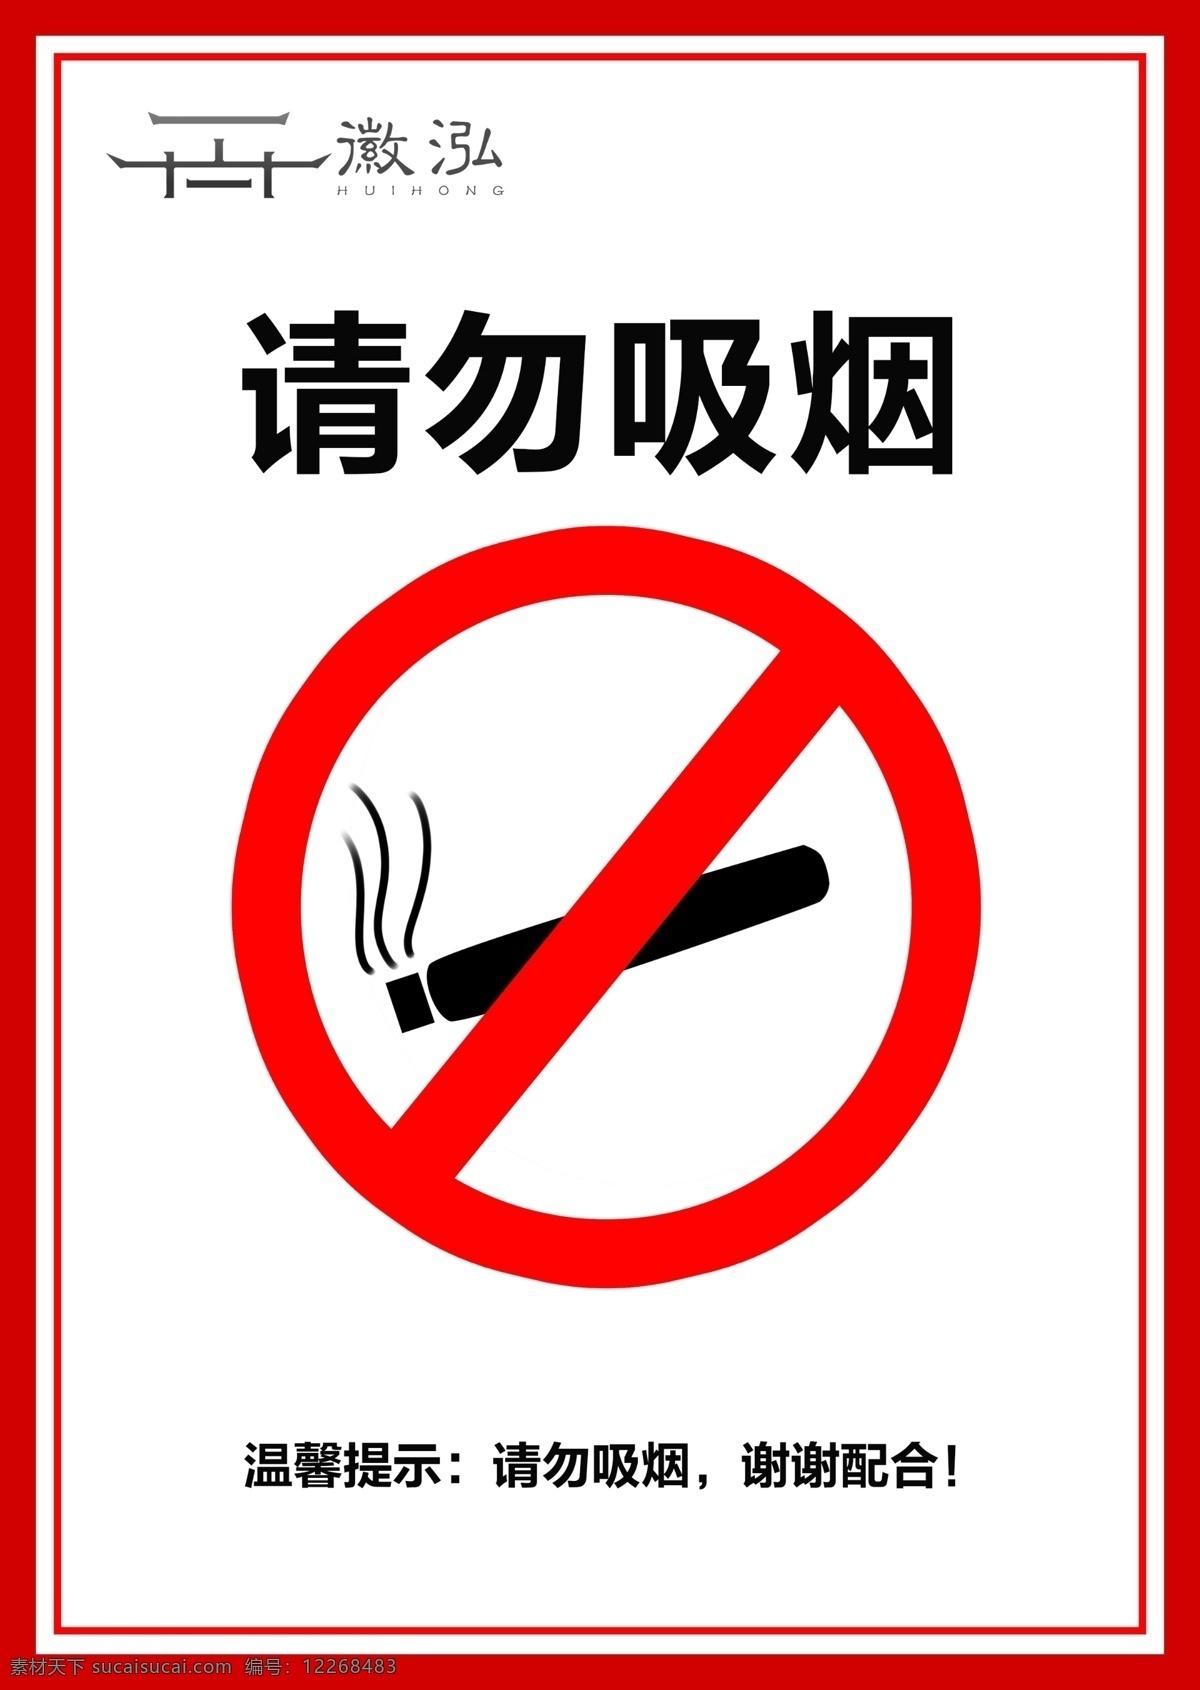 请勿吸烟图片 请勿吸烟 请勿吸烟牌子 请勿吸烟标志 请勿吸烟标牌 请勿吸烟标识 禁止吸烟 严禁吸烟